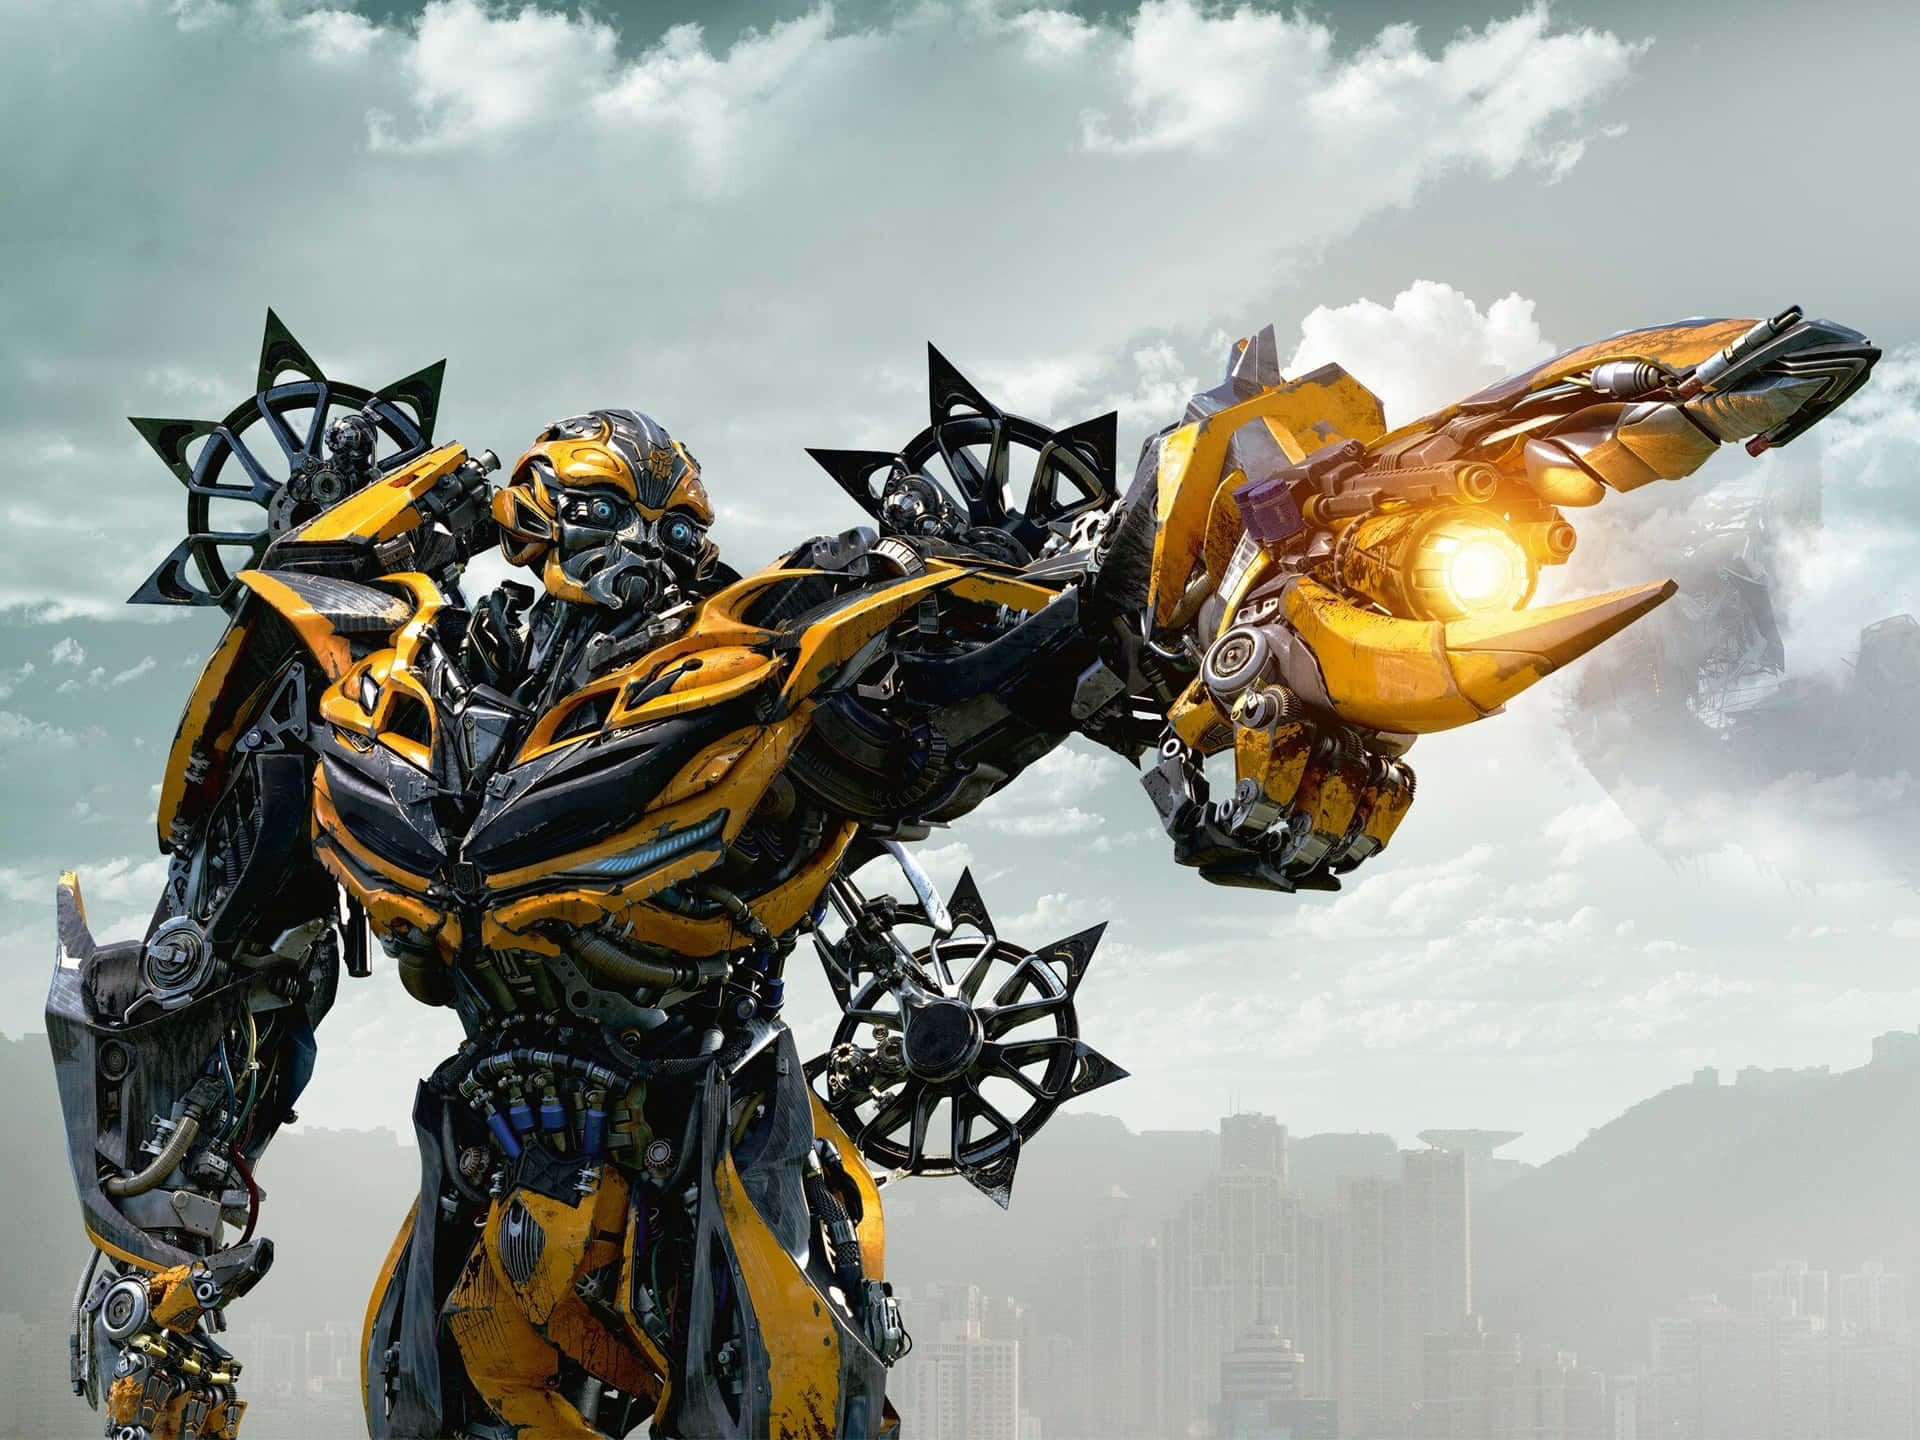 'kraftfuldeallierede: Optimus Prime Og Bumblebee Slår Sig Sammen For At Beskytte Jorden I Transformers.'